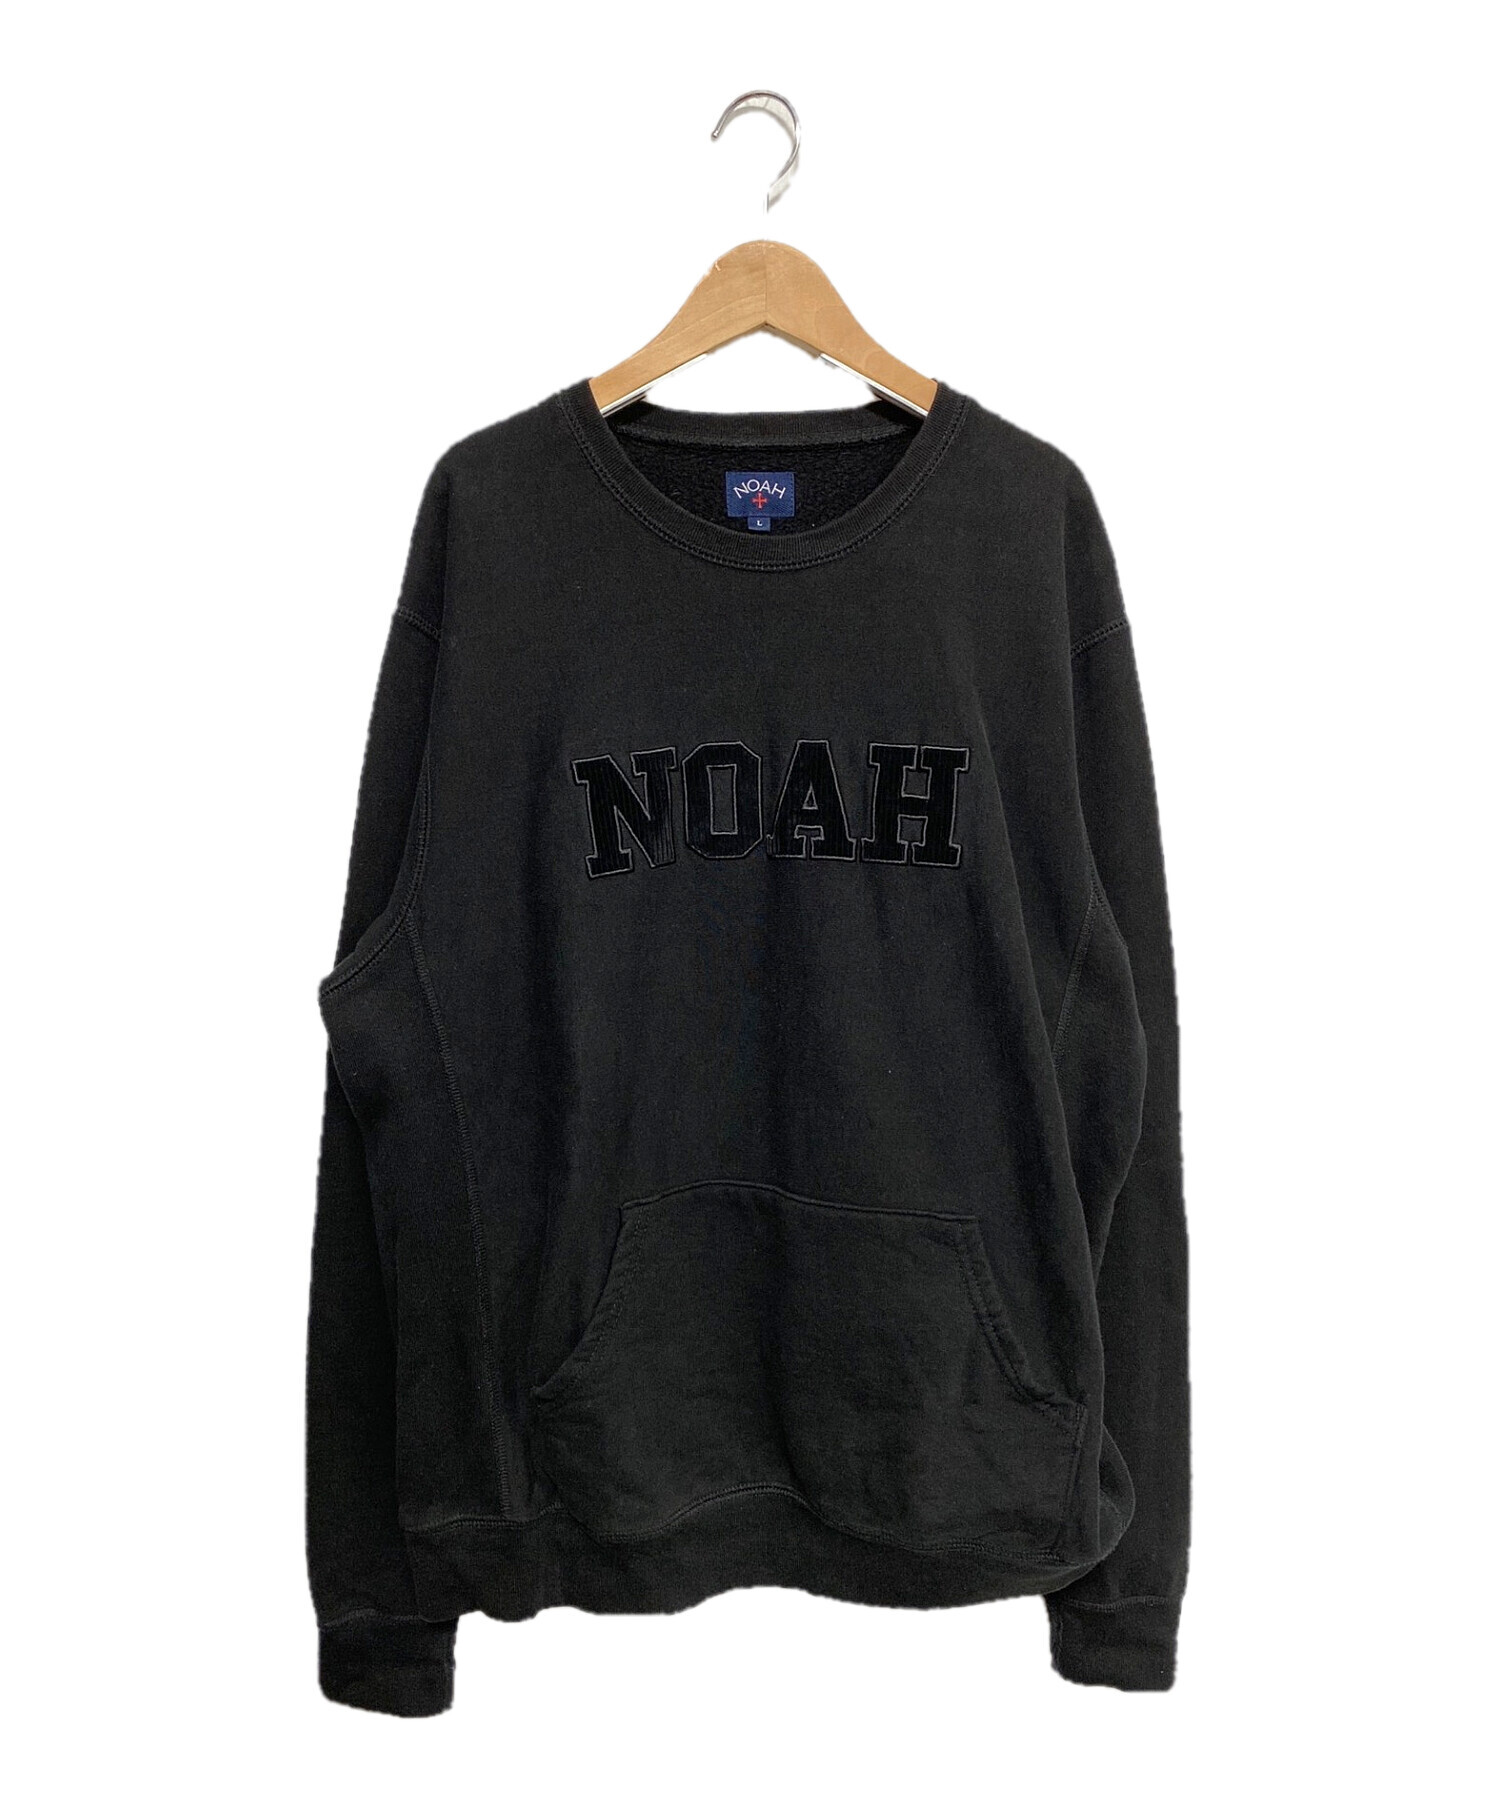 Noah (ノア) スウェット ブラック サイズ:L